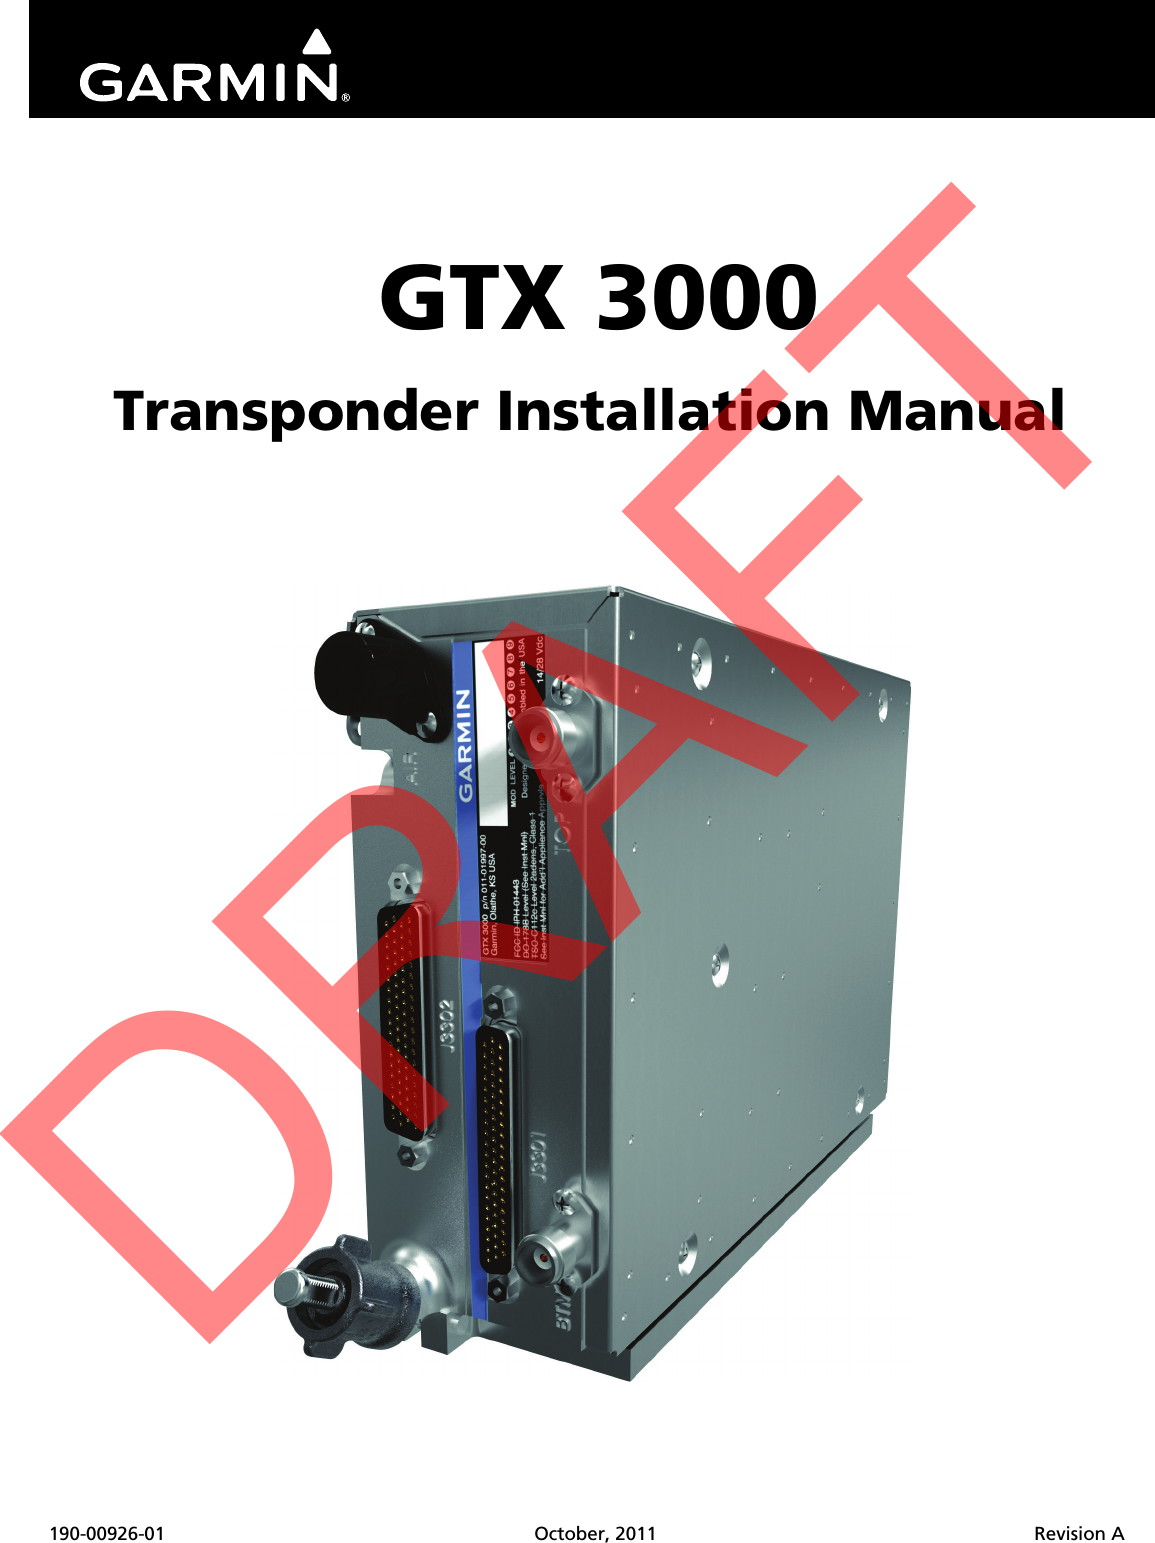 190-00926-01 October, 2011 Revision AGTX 3000Transponder Installation ManualDRAFT